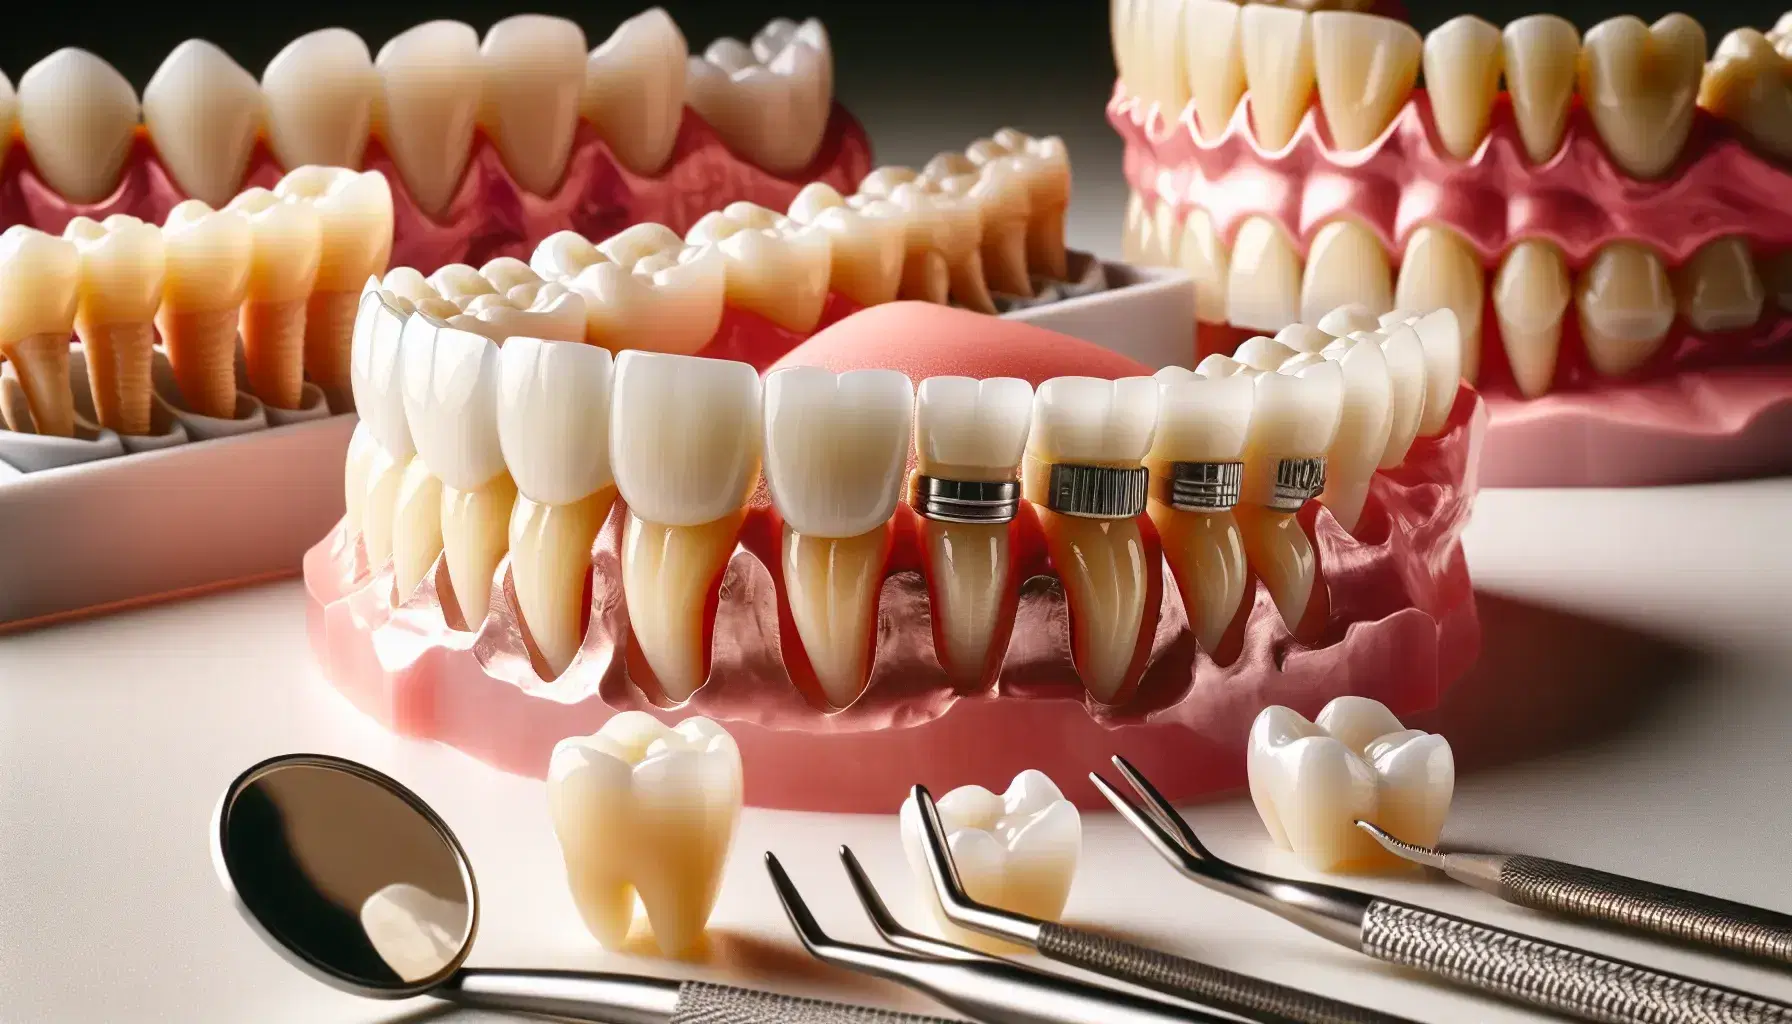 Protesi dentale completa con denti artificiali su base rosa, corone singole traslucide e opache, e parziale removibile con ganci metallici su superficie bianca.